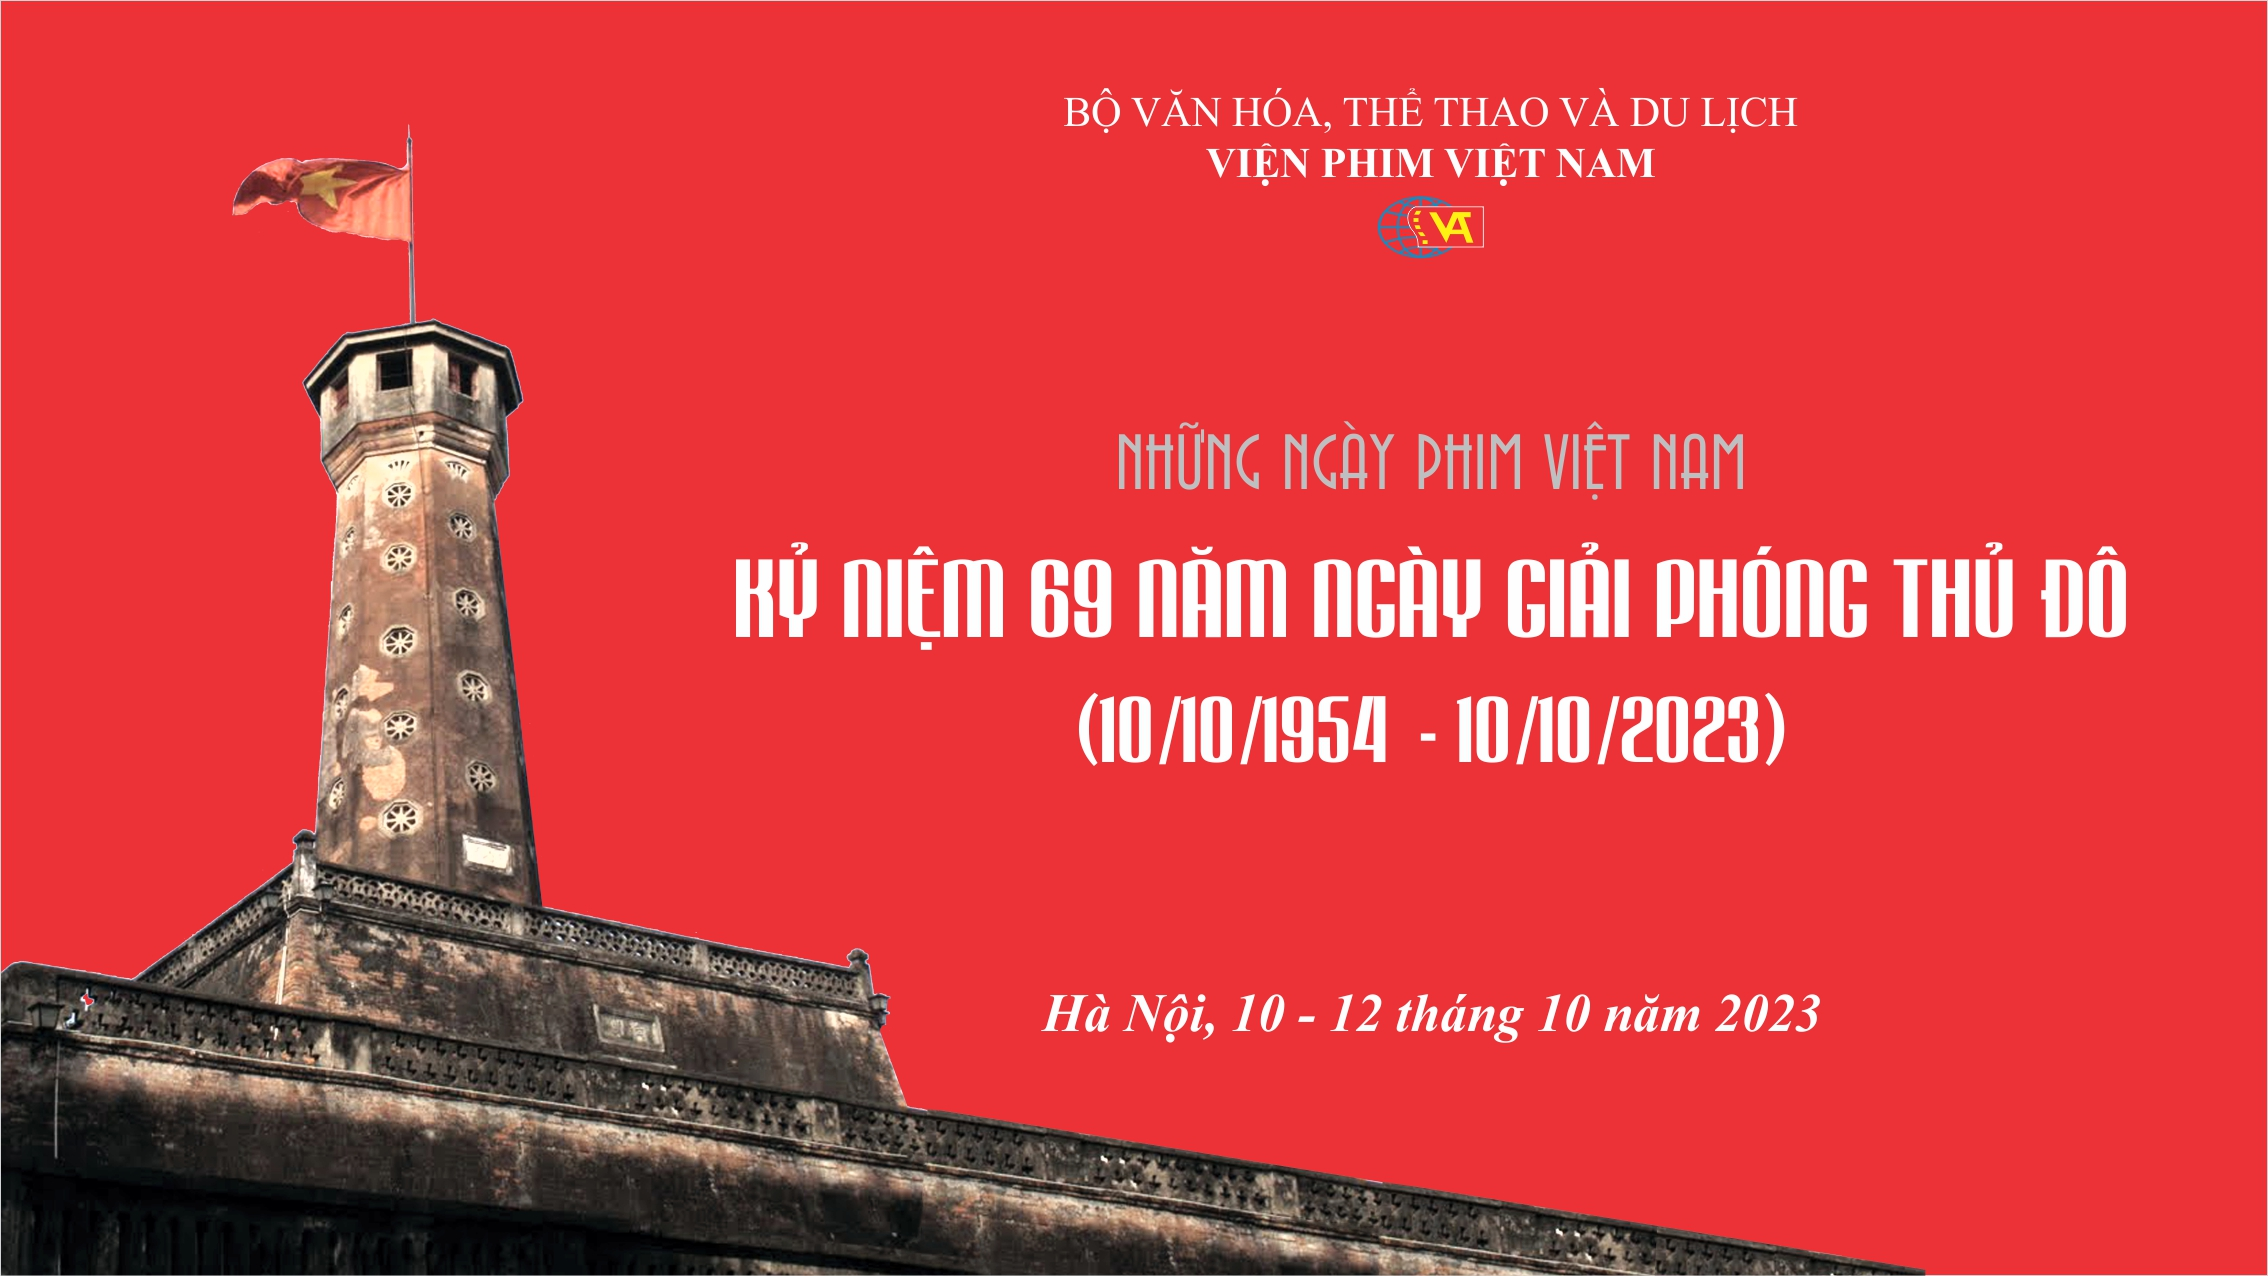 Đảng bộ Viện Phim Việt Nam nhận Giải thưởng Tác phẩm có hình thức trình bày sáng tạo trong Cuộc thi chính luận về bảo vệ nền tảng tư tưởng của Đảng năm 2023